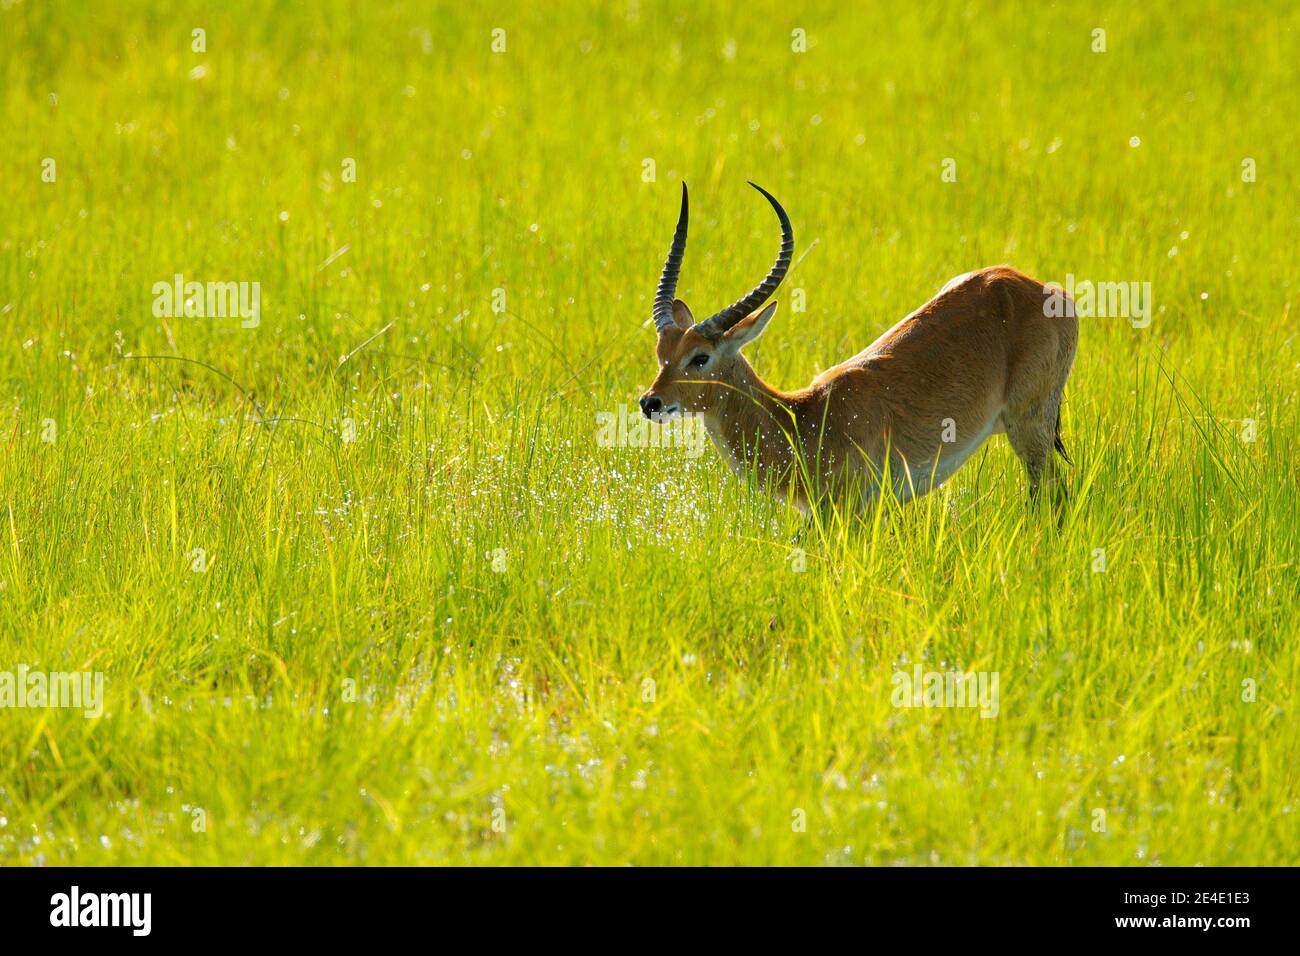 Lechwe, Kobus leche, antelope in the green grass wetlands with water. Lechve running in the river water, Okavango delta, Botswanav in Africa. Wildlife Stock Photo